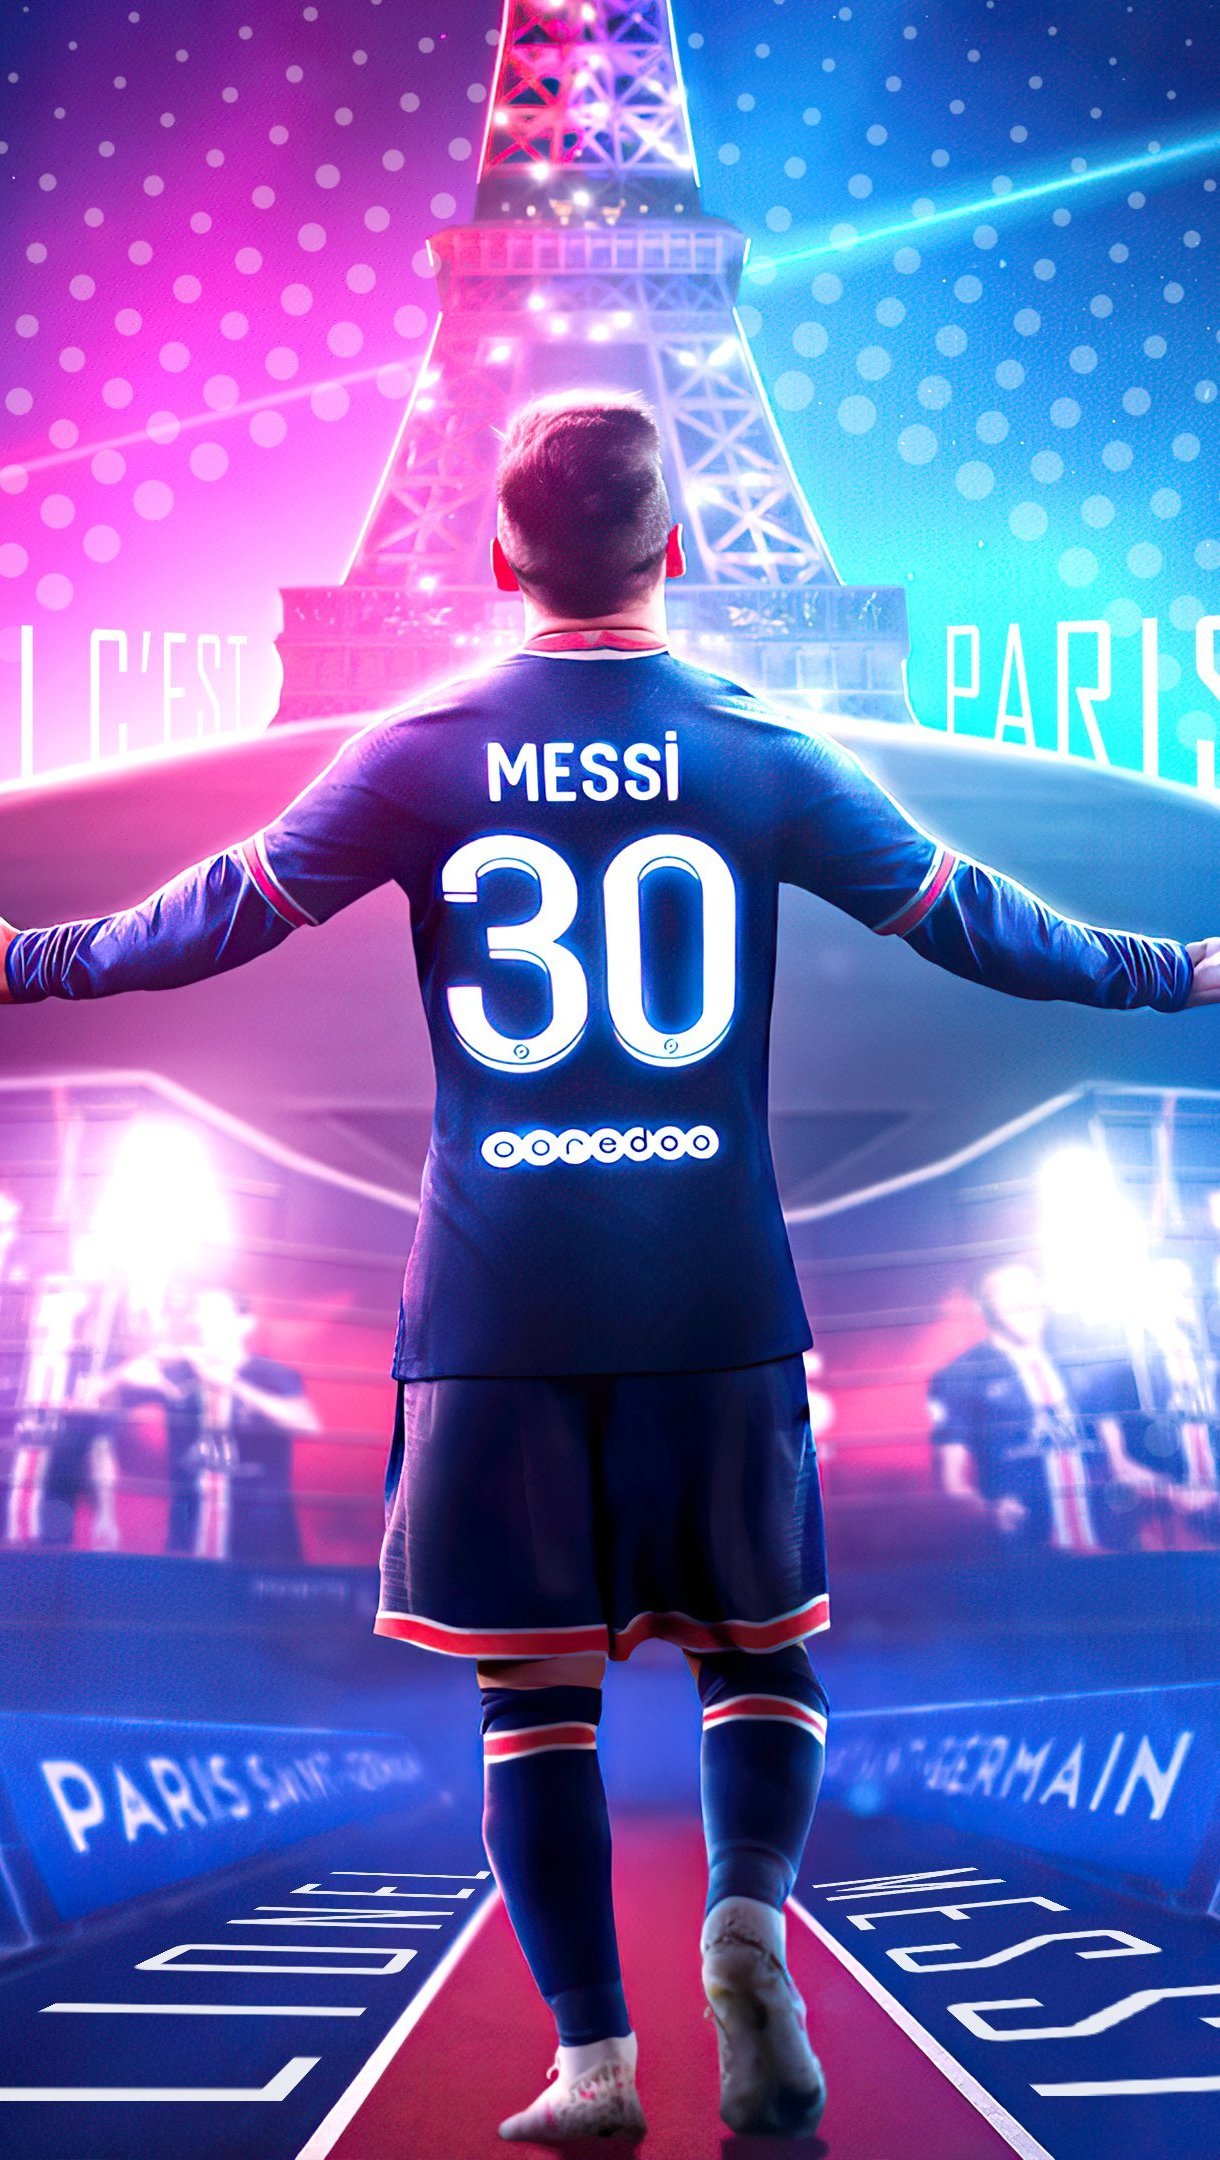 Sự xuất hiện của Messi trong đội tuyển Paris Saint-Germain đã thu hút sự chú ý của rất nhiều người yêu bóng đá. Hãy xem hình nền đội tuyển PSG với Messi bao gồm tất cả những gì mà fan hâm mộ của anh ấy mong muốn.